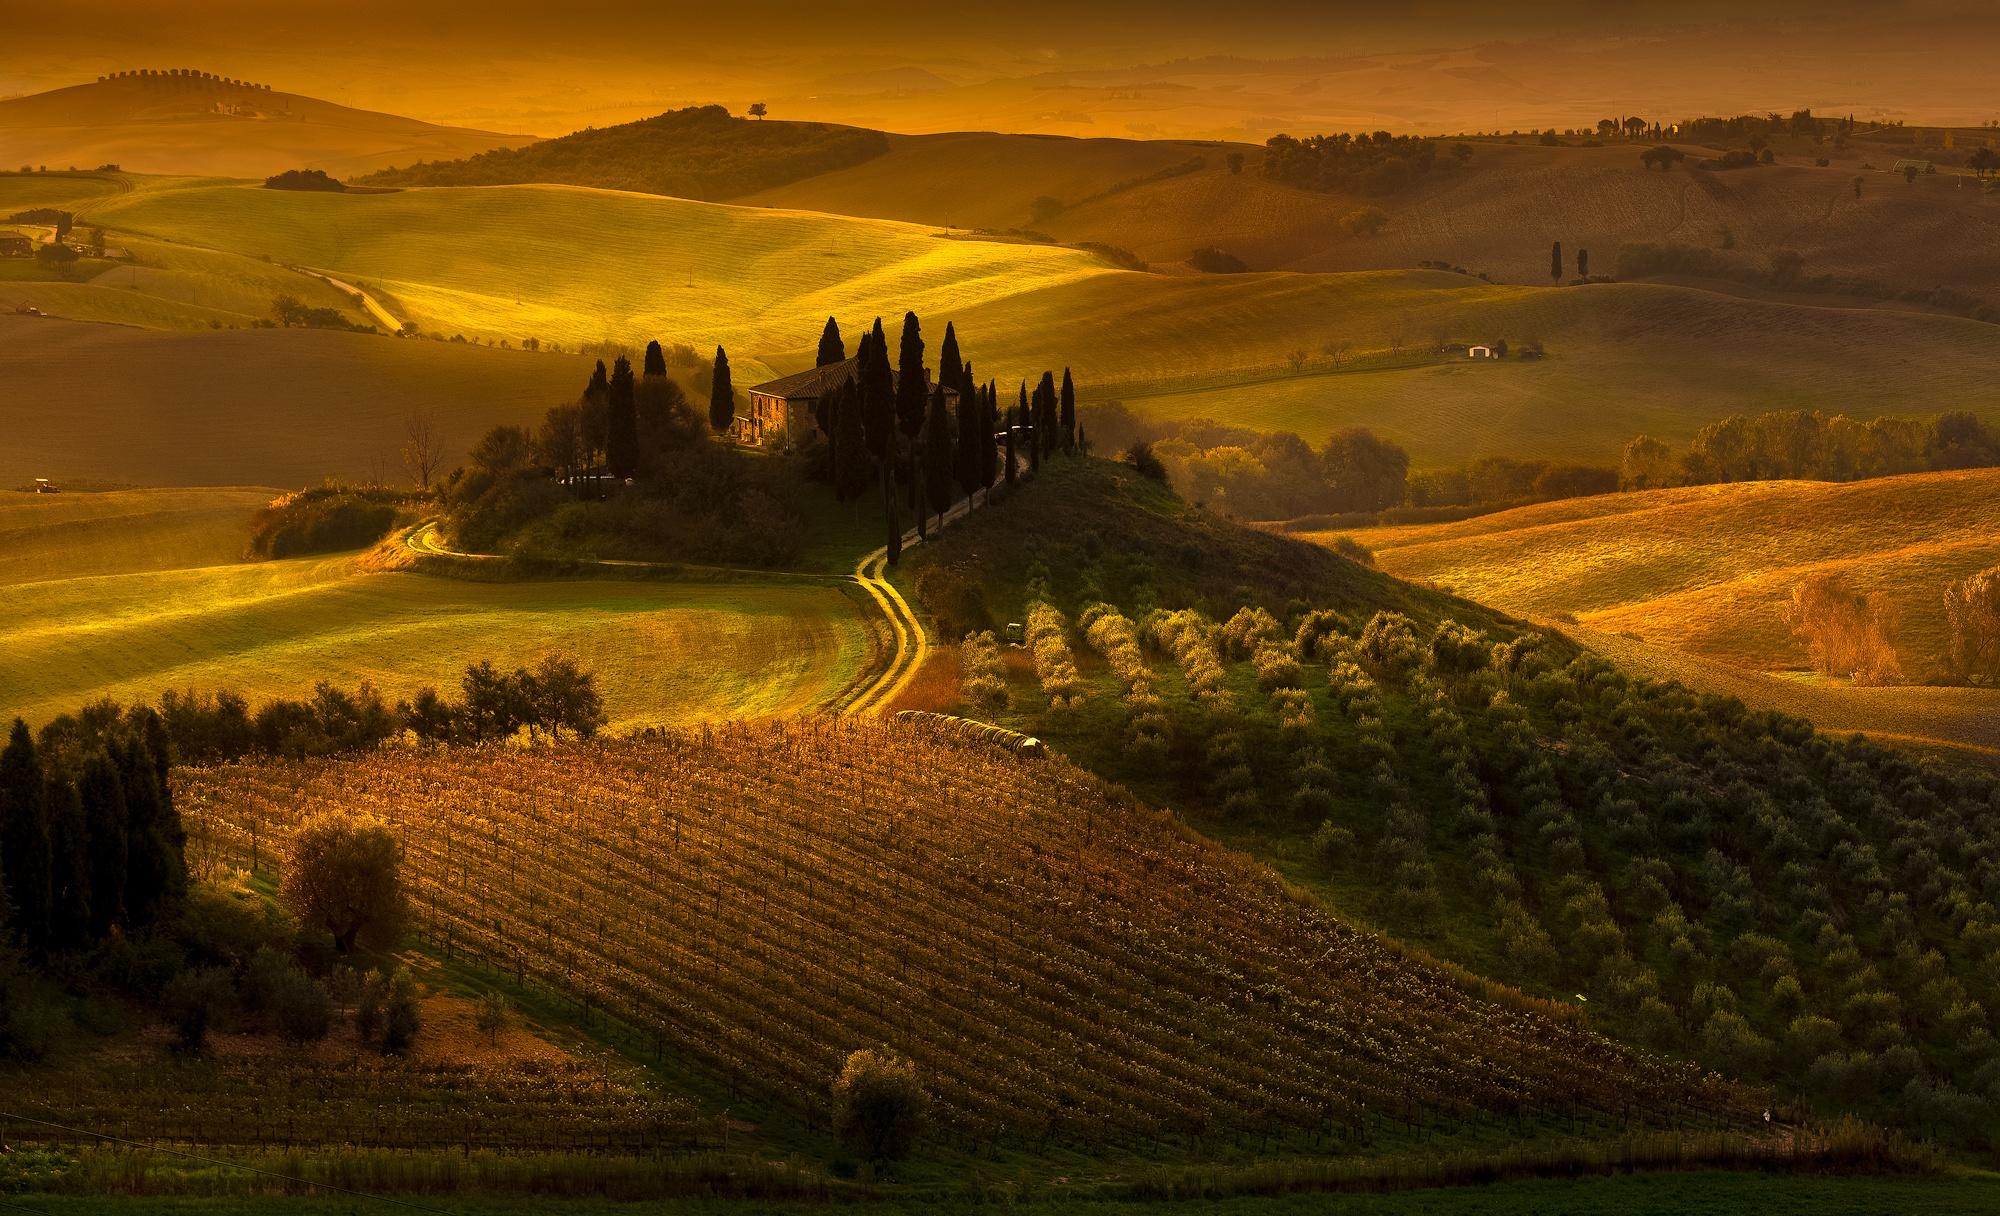 Tuscany's autumn